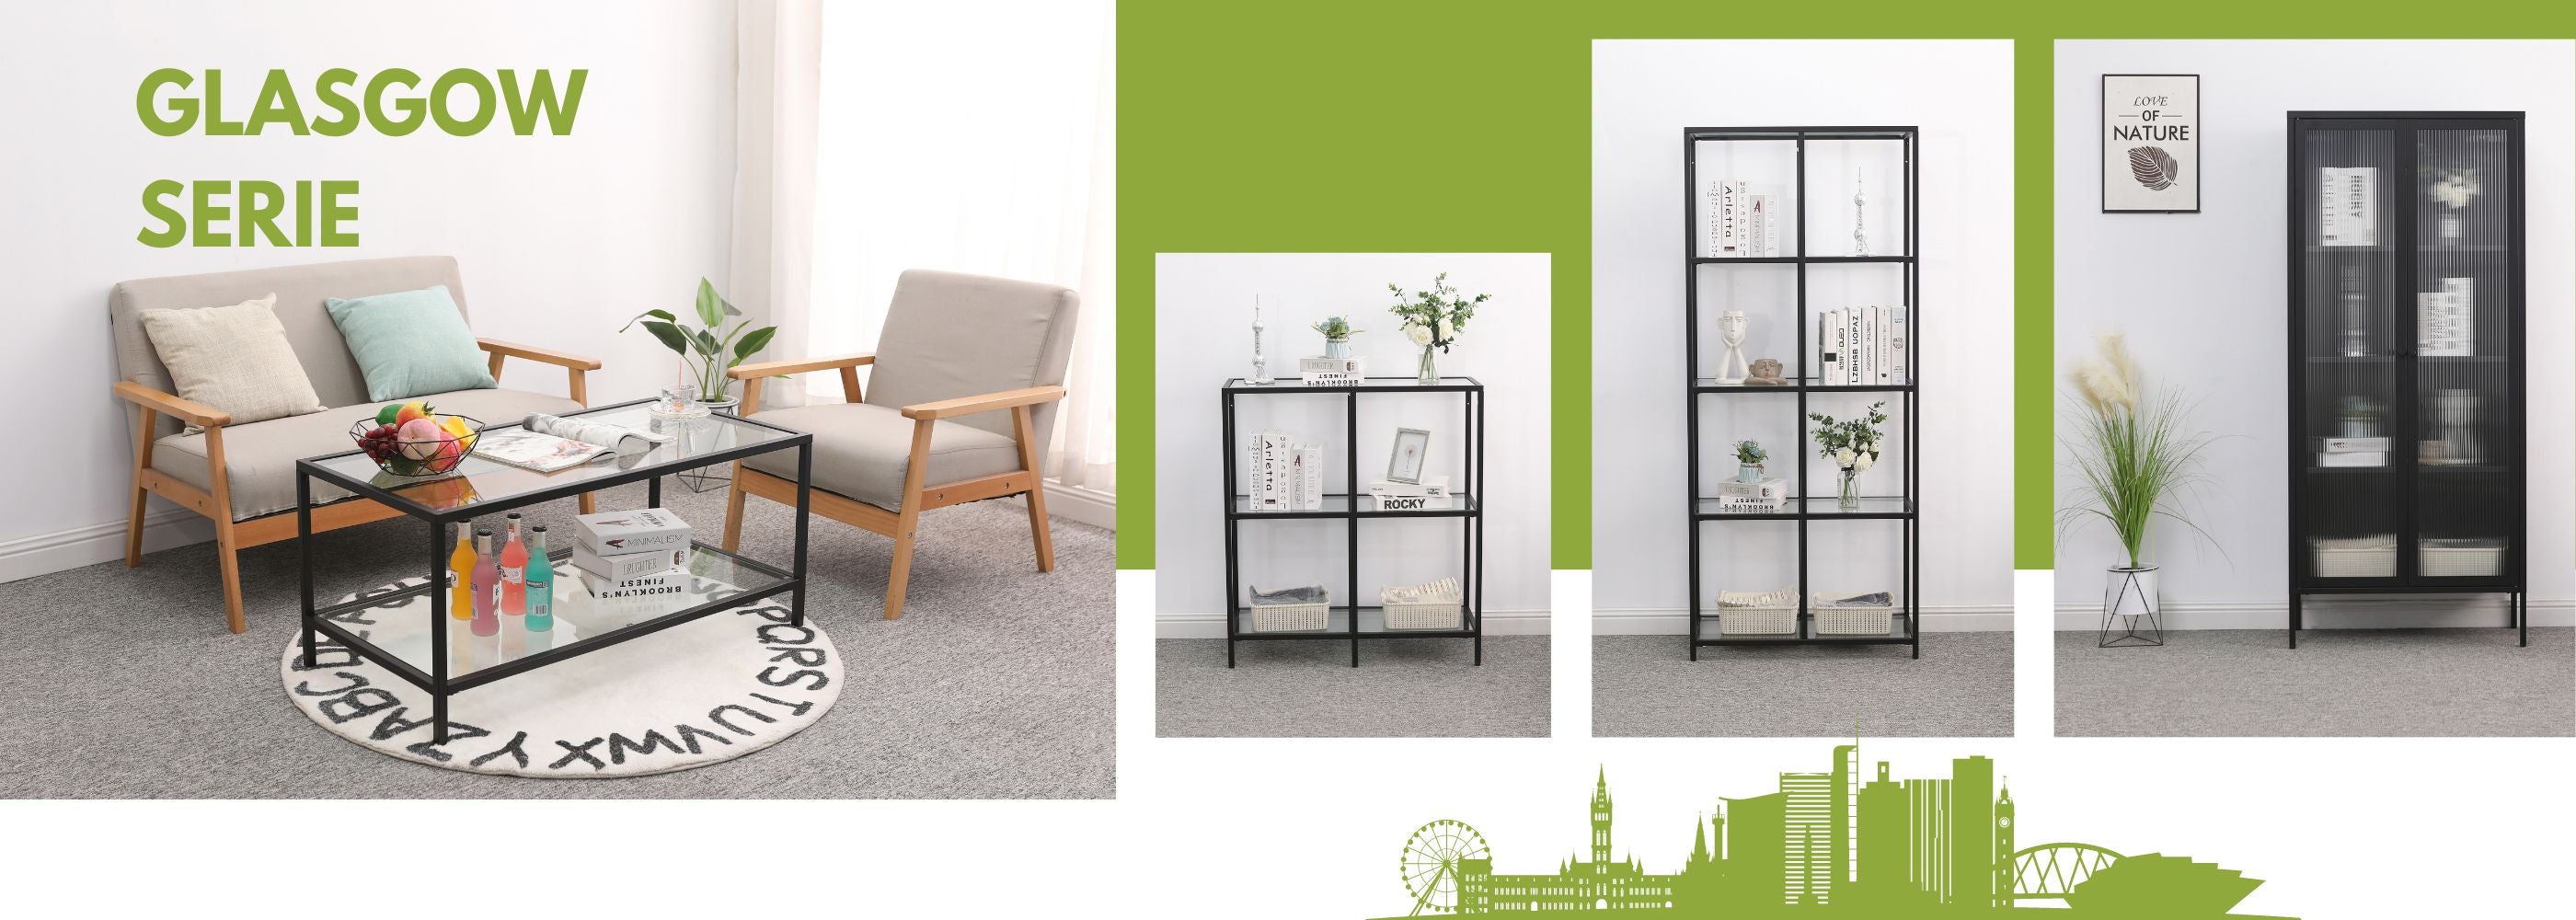 Möbelserie Glasgow mit Couchtisch, Regale und Vitrinen aus Metall - Moderne und stilvolle Möbel für Ihren Wohnbereich.